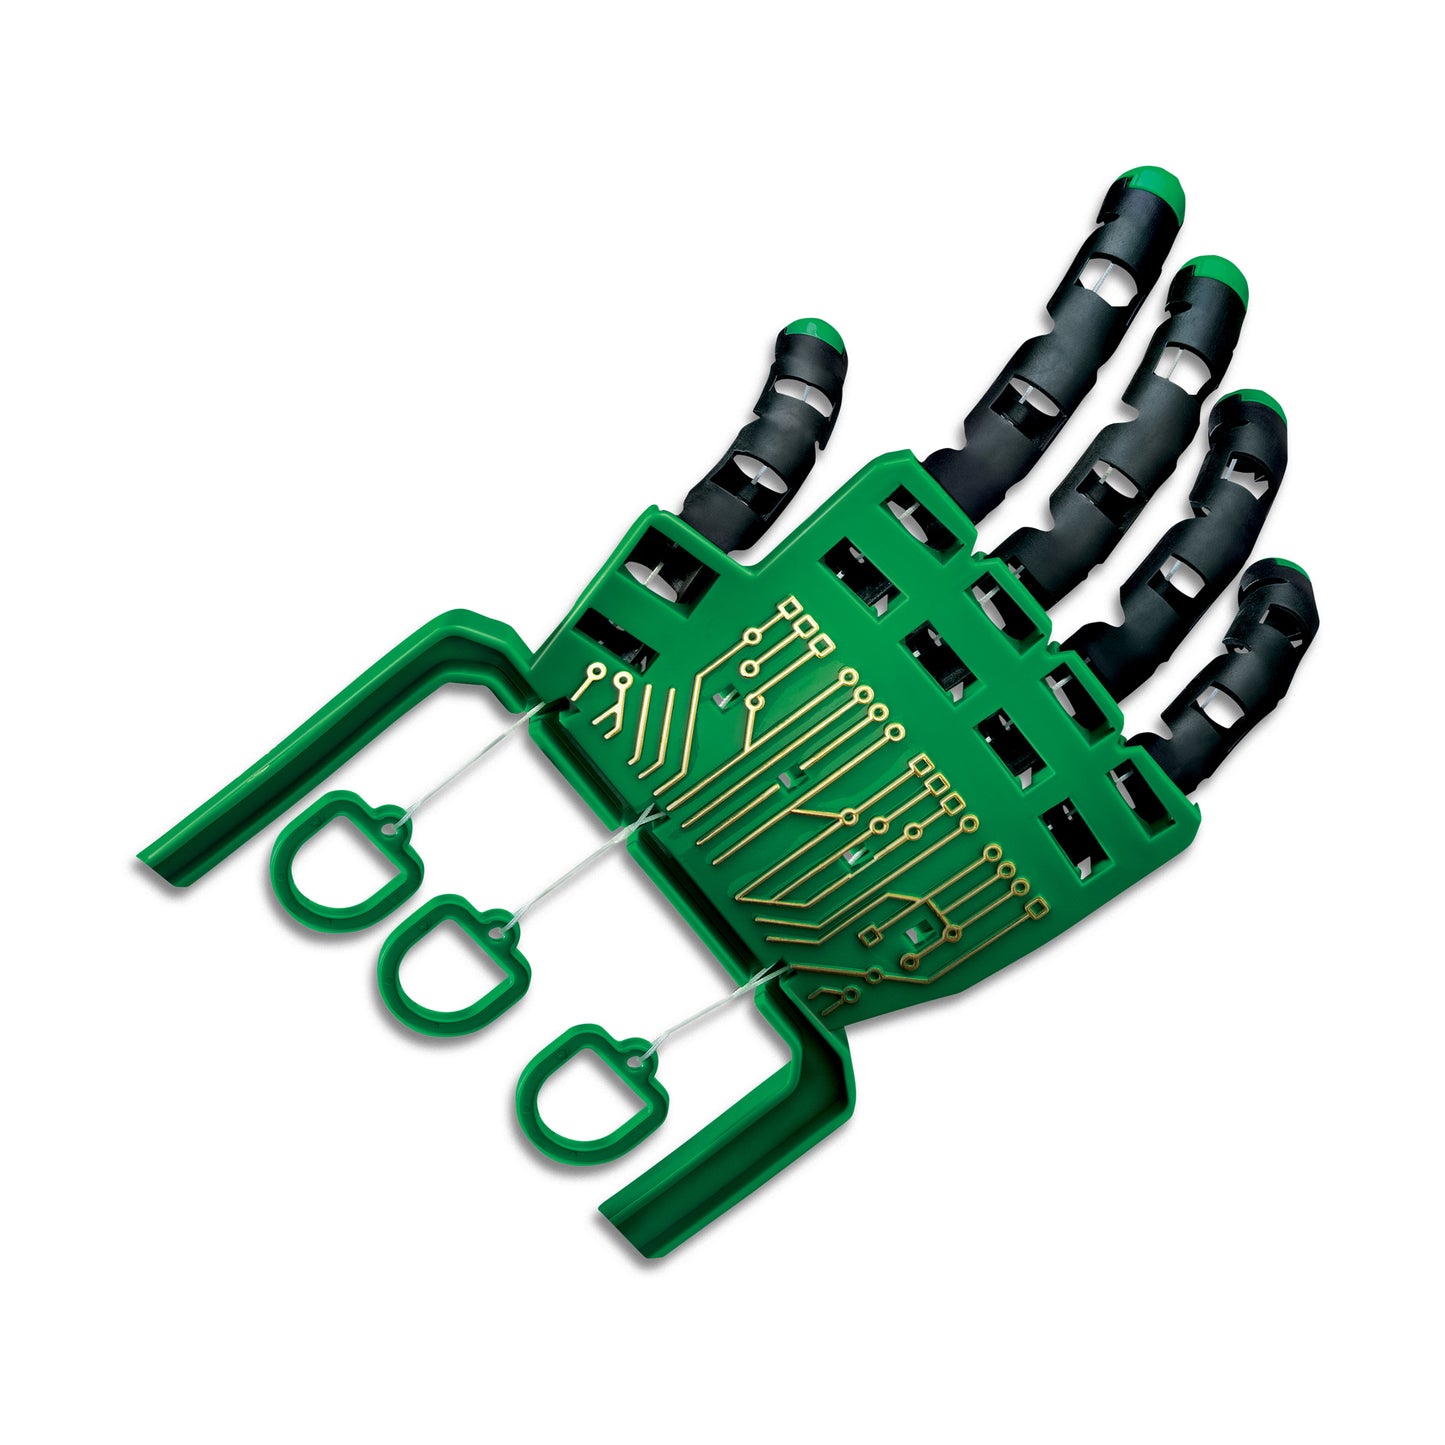 4M - KIDZLABS - ROBOTIC HAND